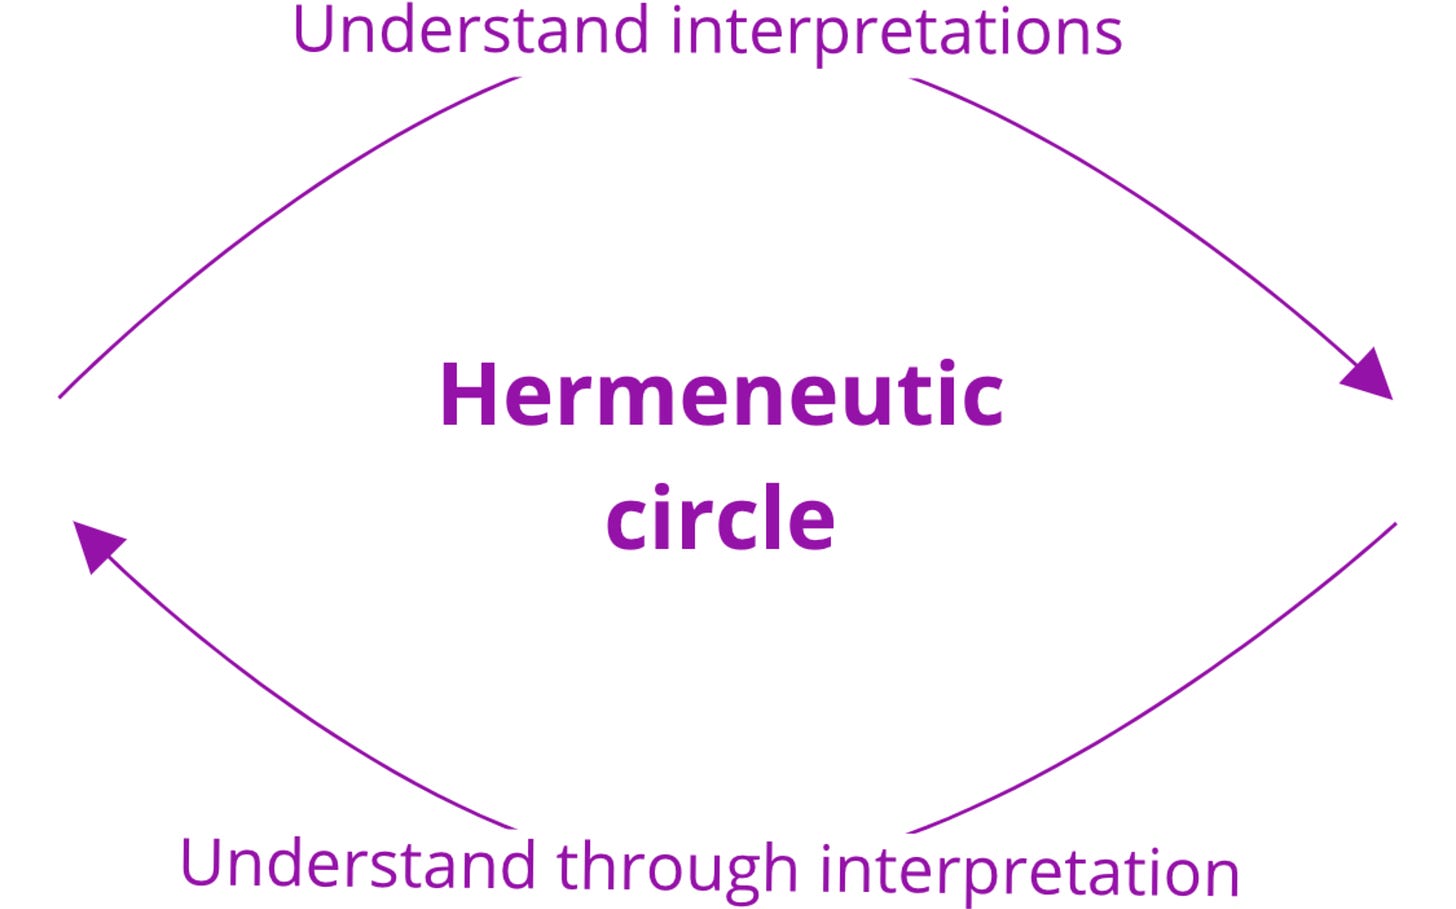 A graph showing understanding interpretations will lead to understanding through interpretation